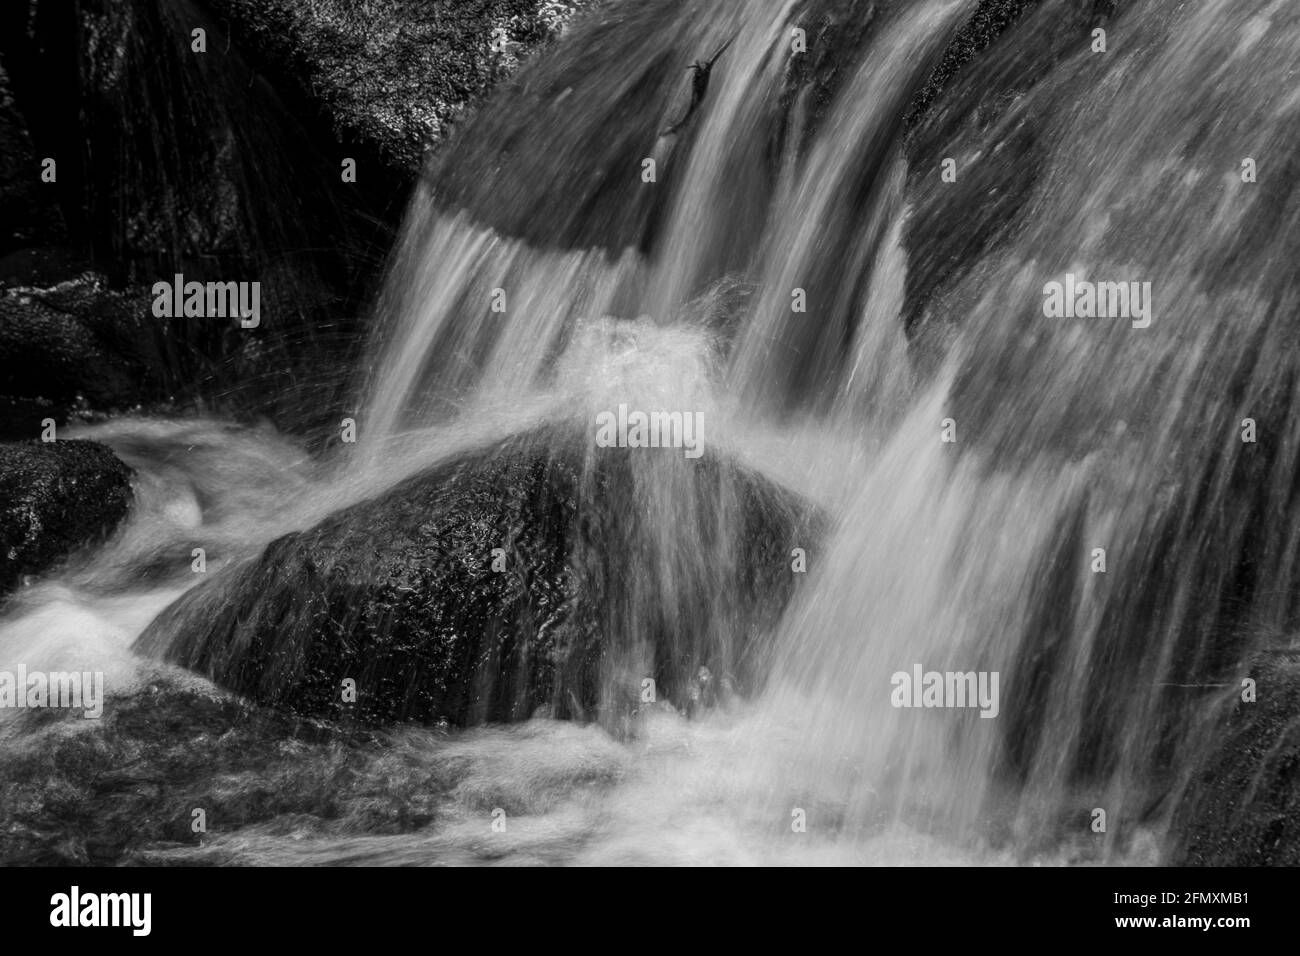 Réserve naturelle de Wyming brook. Gros plan sur une chute d'eau à une vitesse d'obturation de 1/8 fois supérieure, parc national de Peak District, Sheffield, Angleterre, Royaume-Uni Banque D'Images